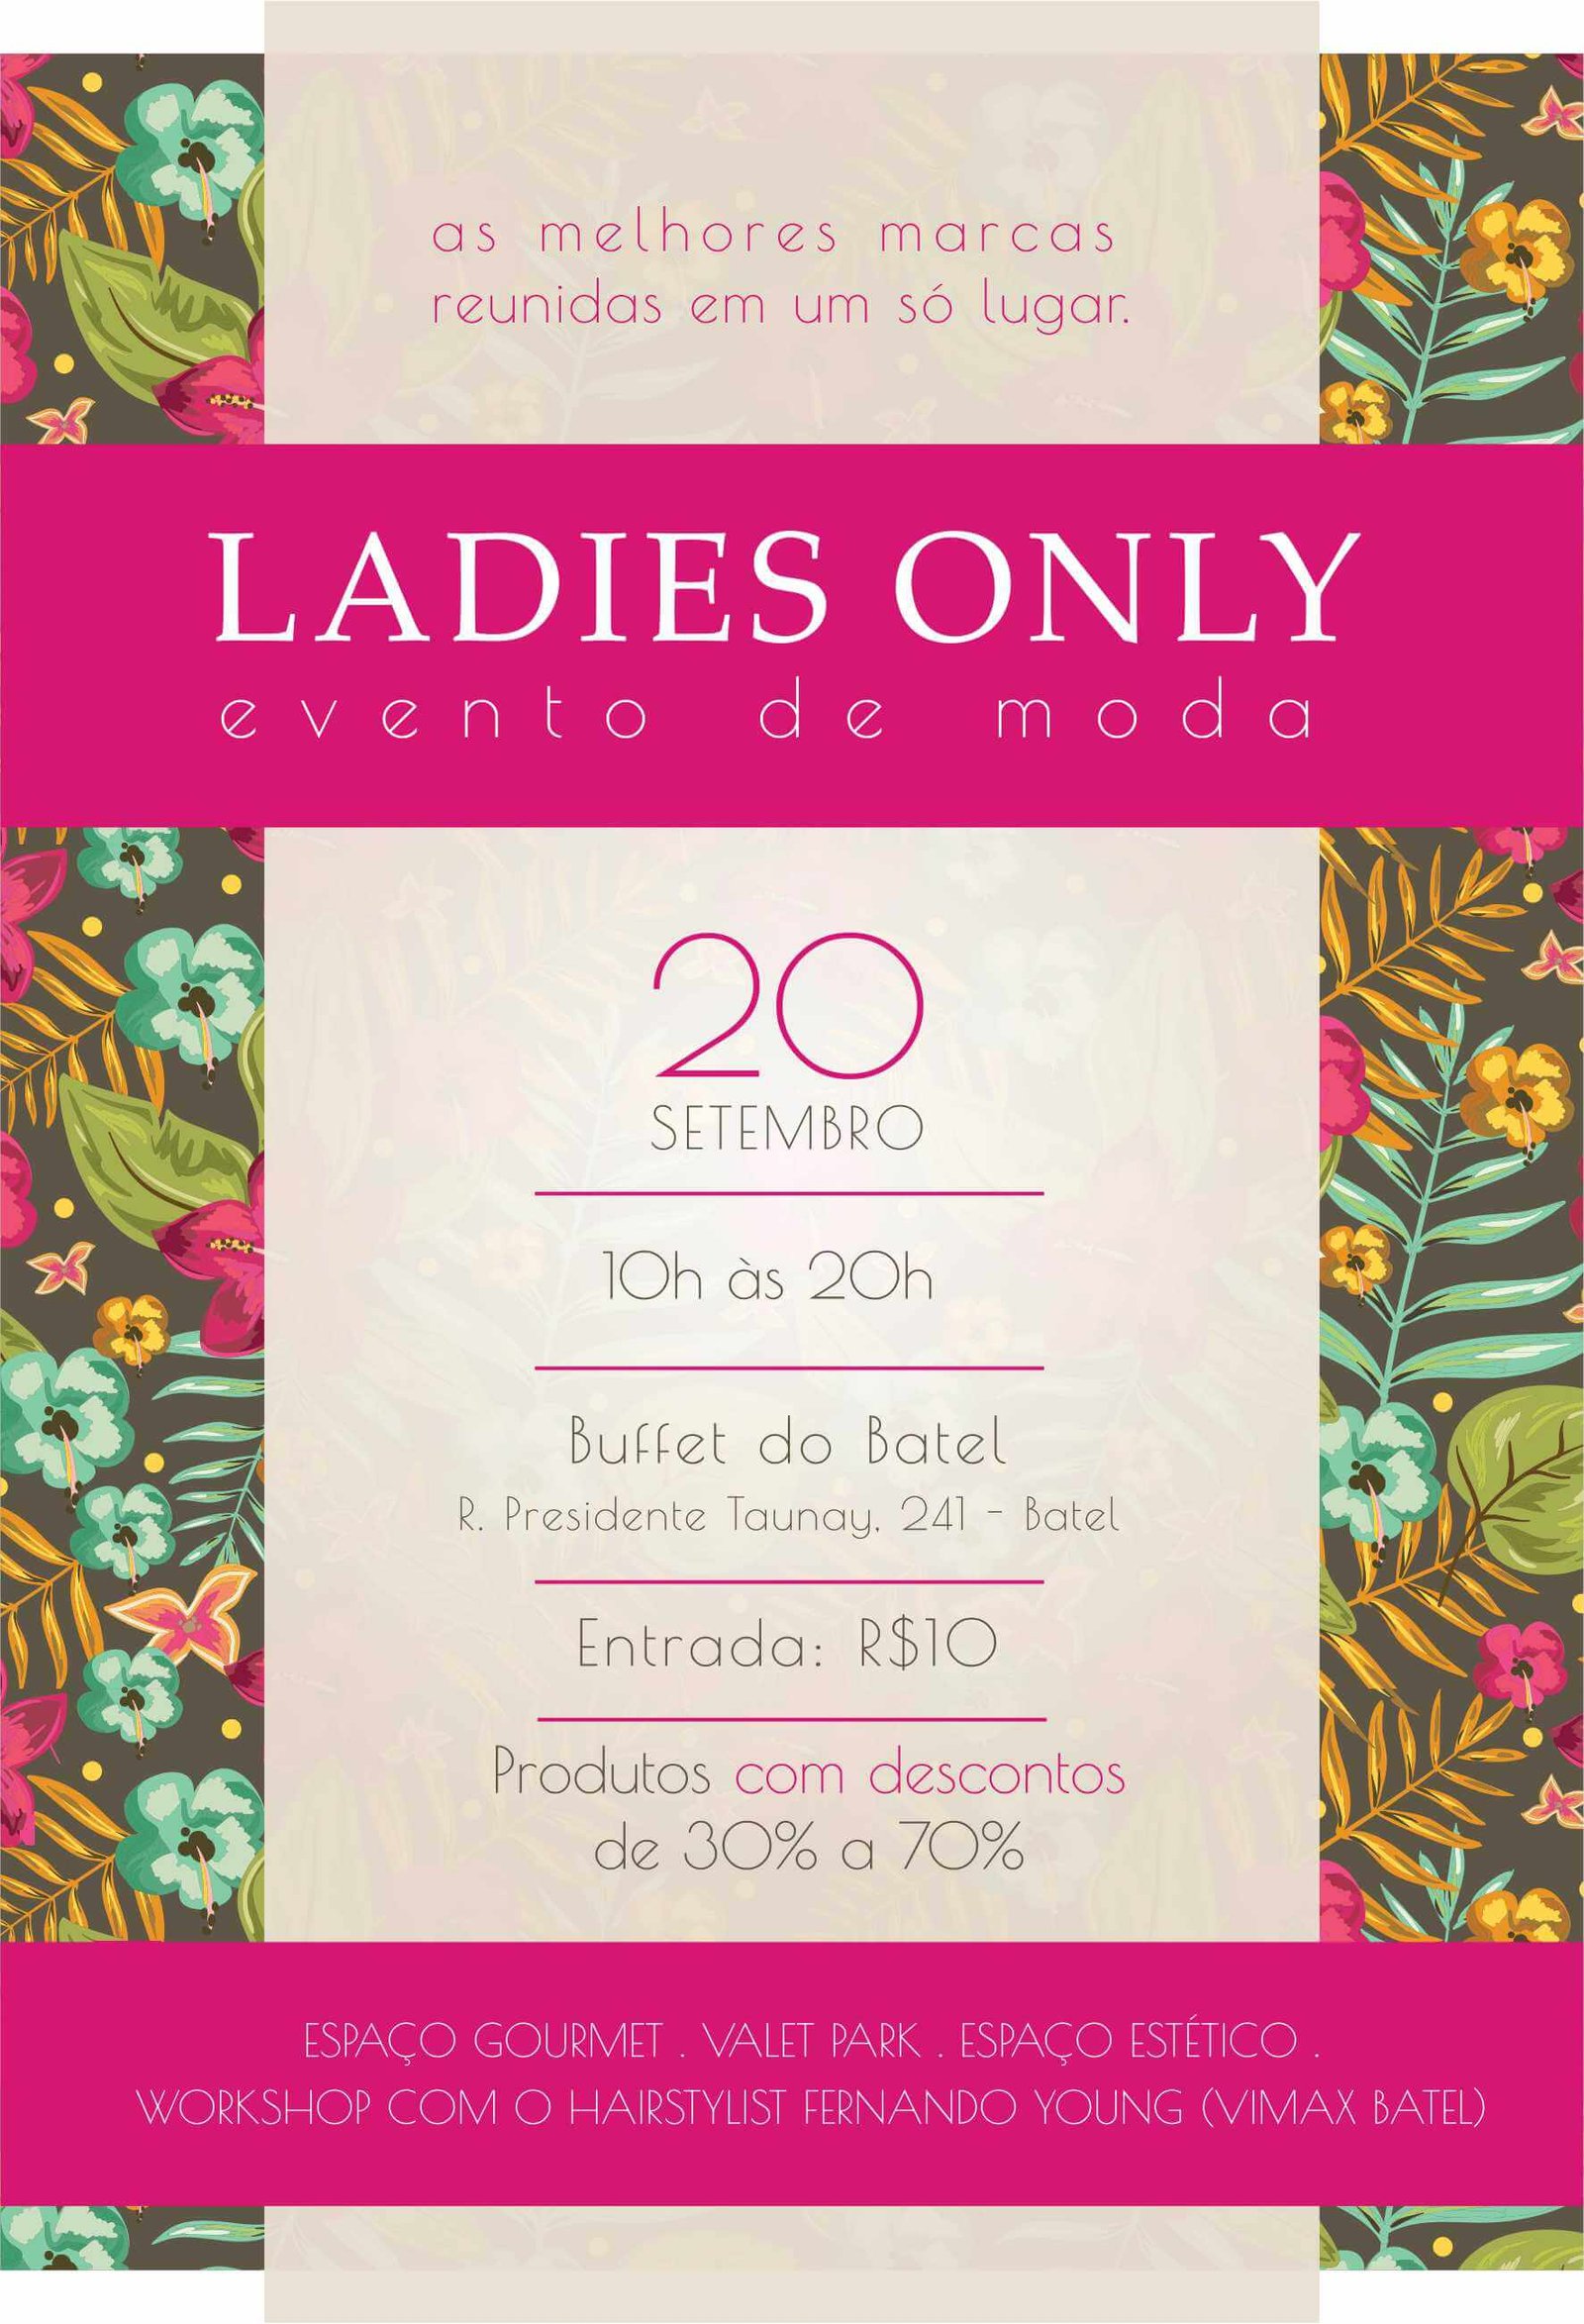 Convite: Ladies Only evento de moda em Curitiba traz marcas com até 70% de desconto